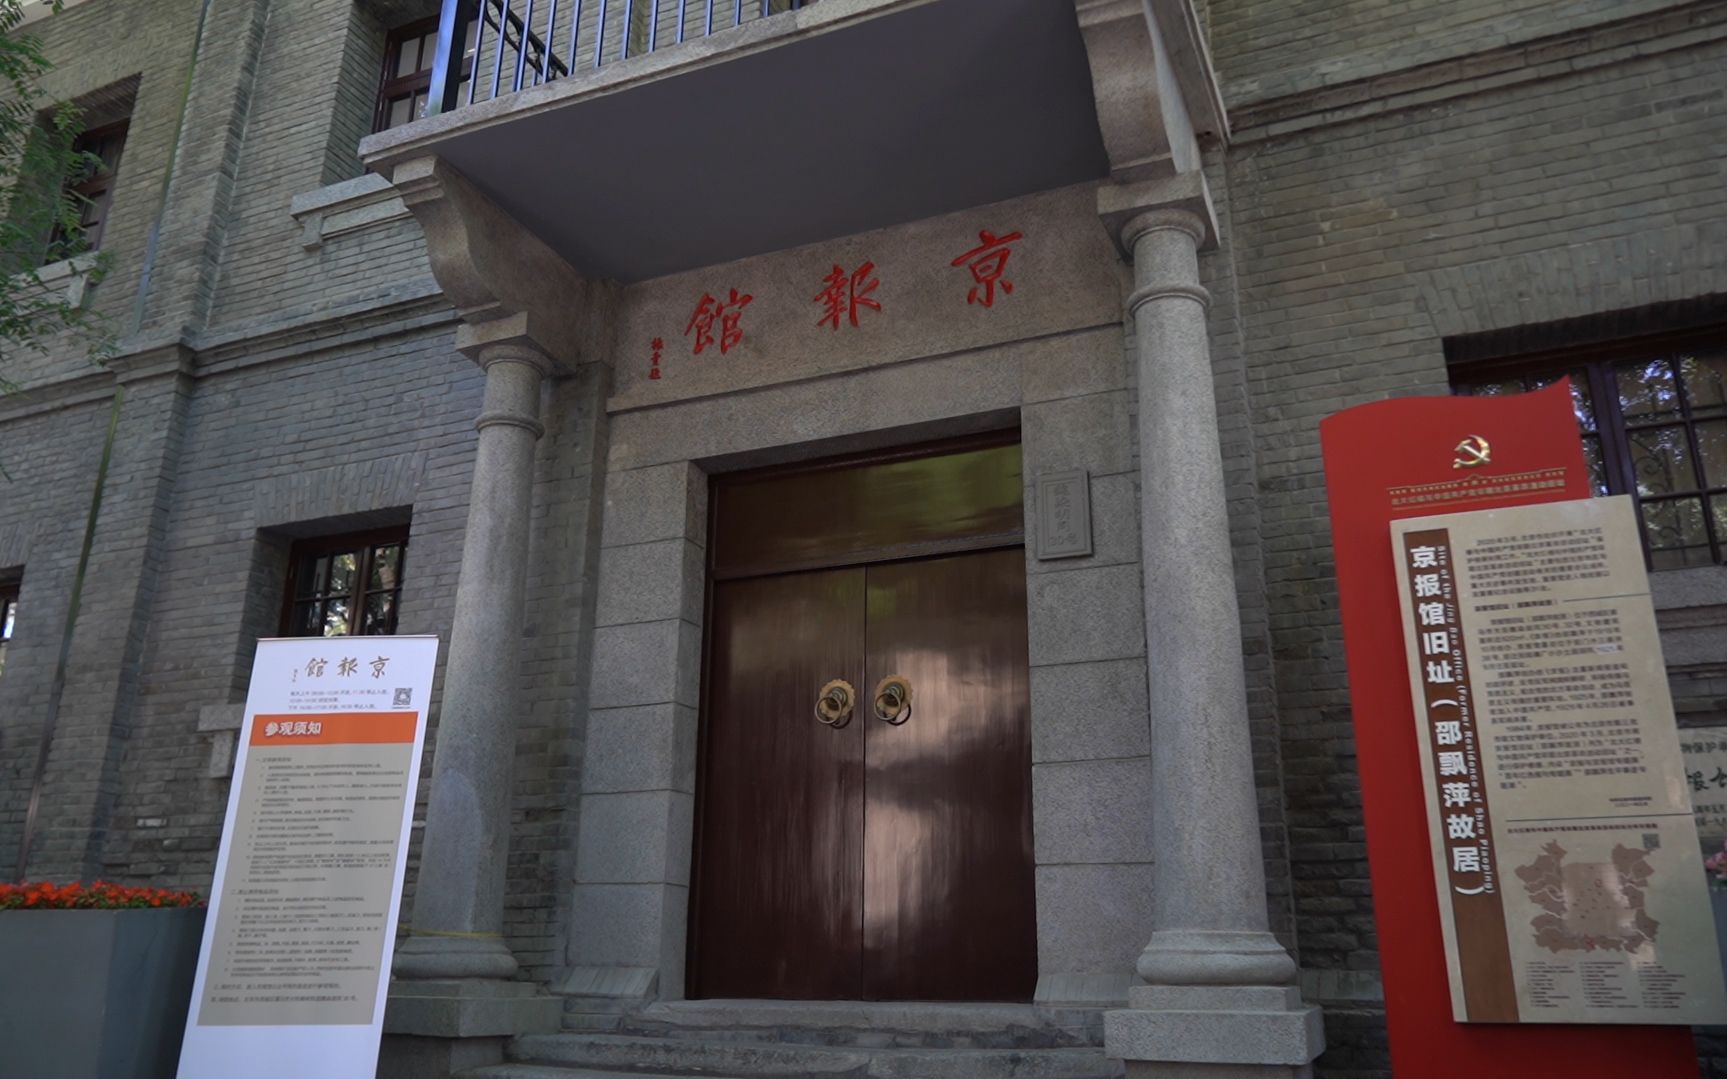 经过两年的腾退修葺,今年6月,京报馆旧址(邵飘萍故居)以红色报业博物